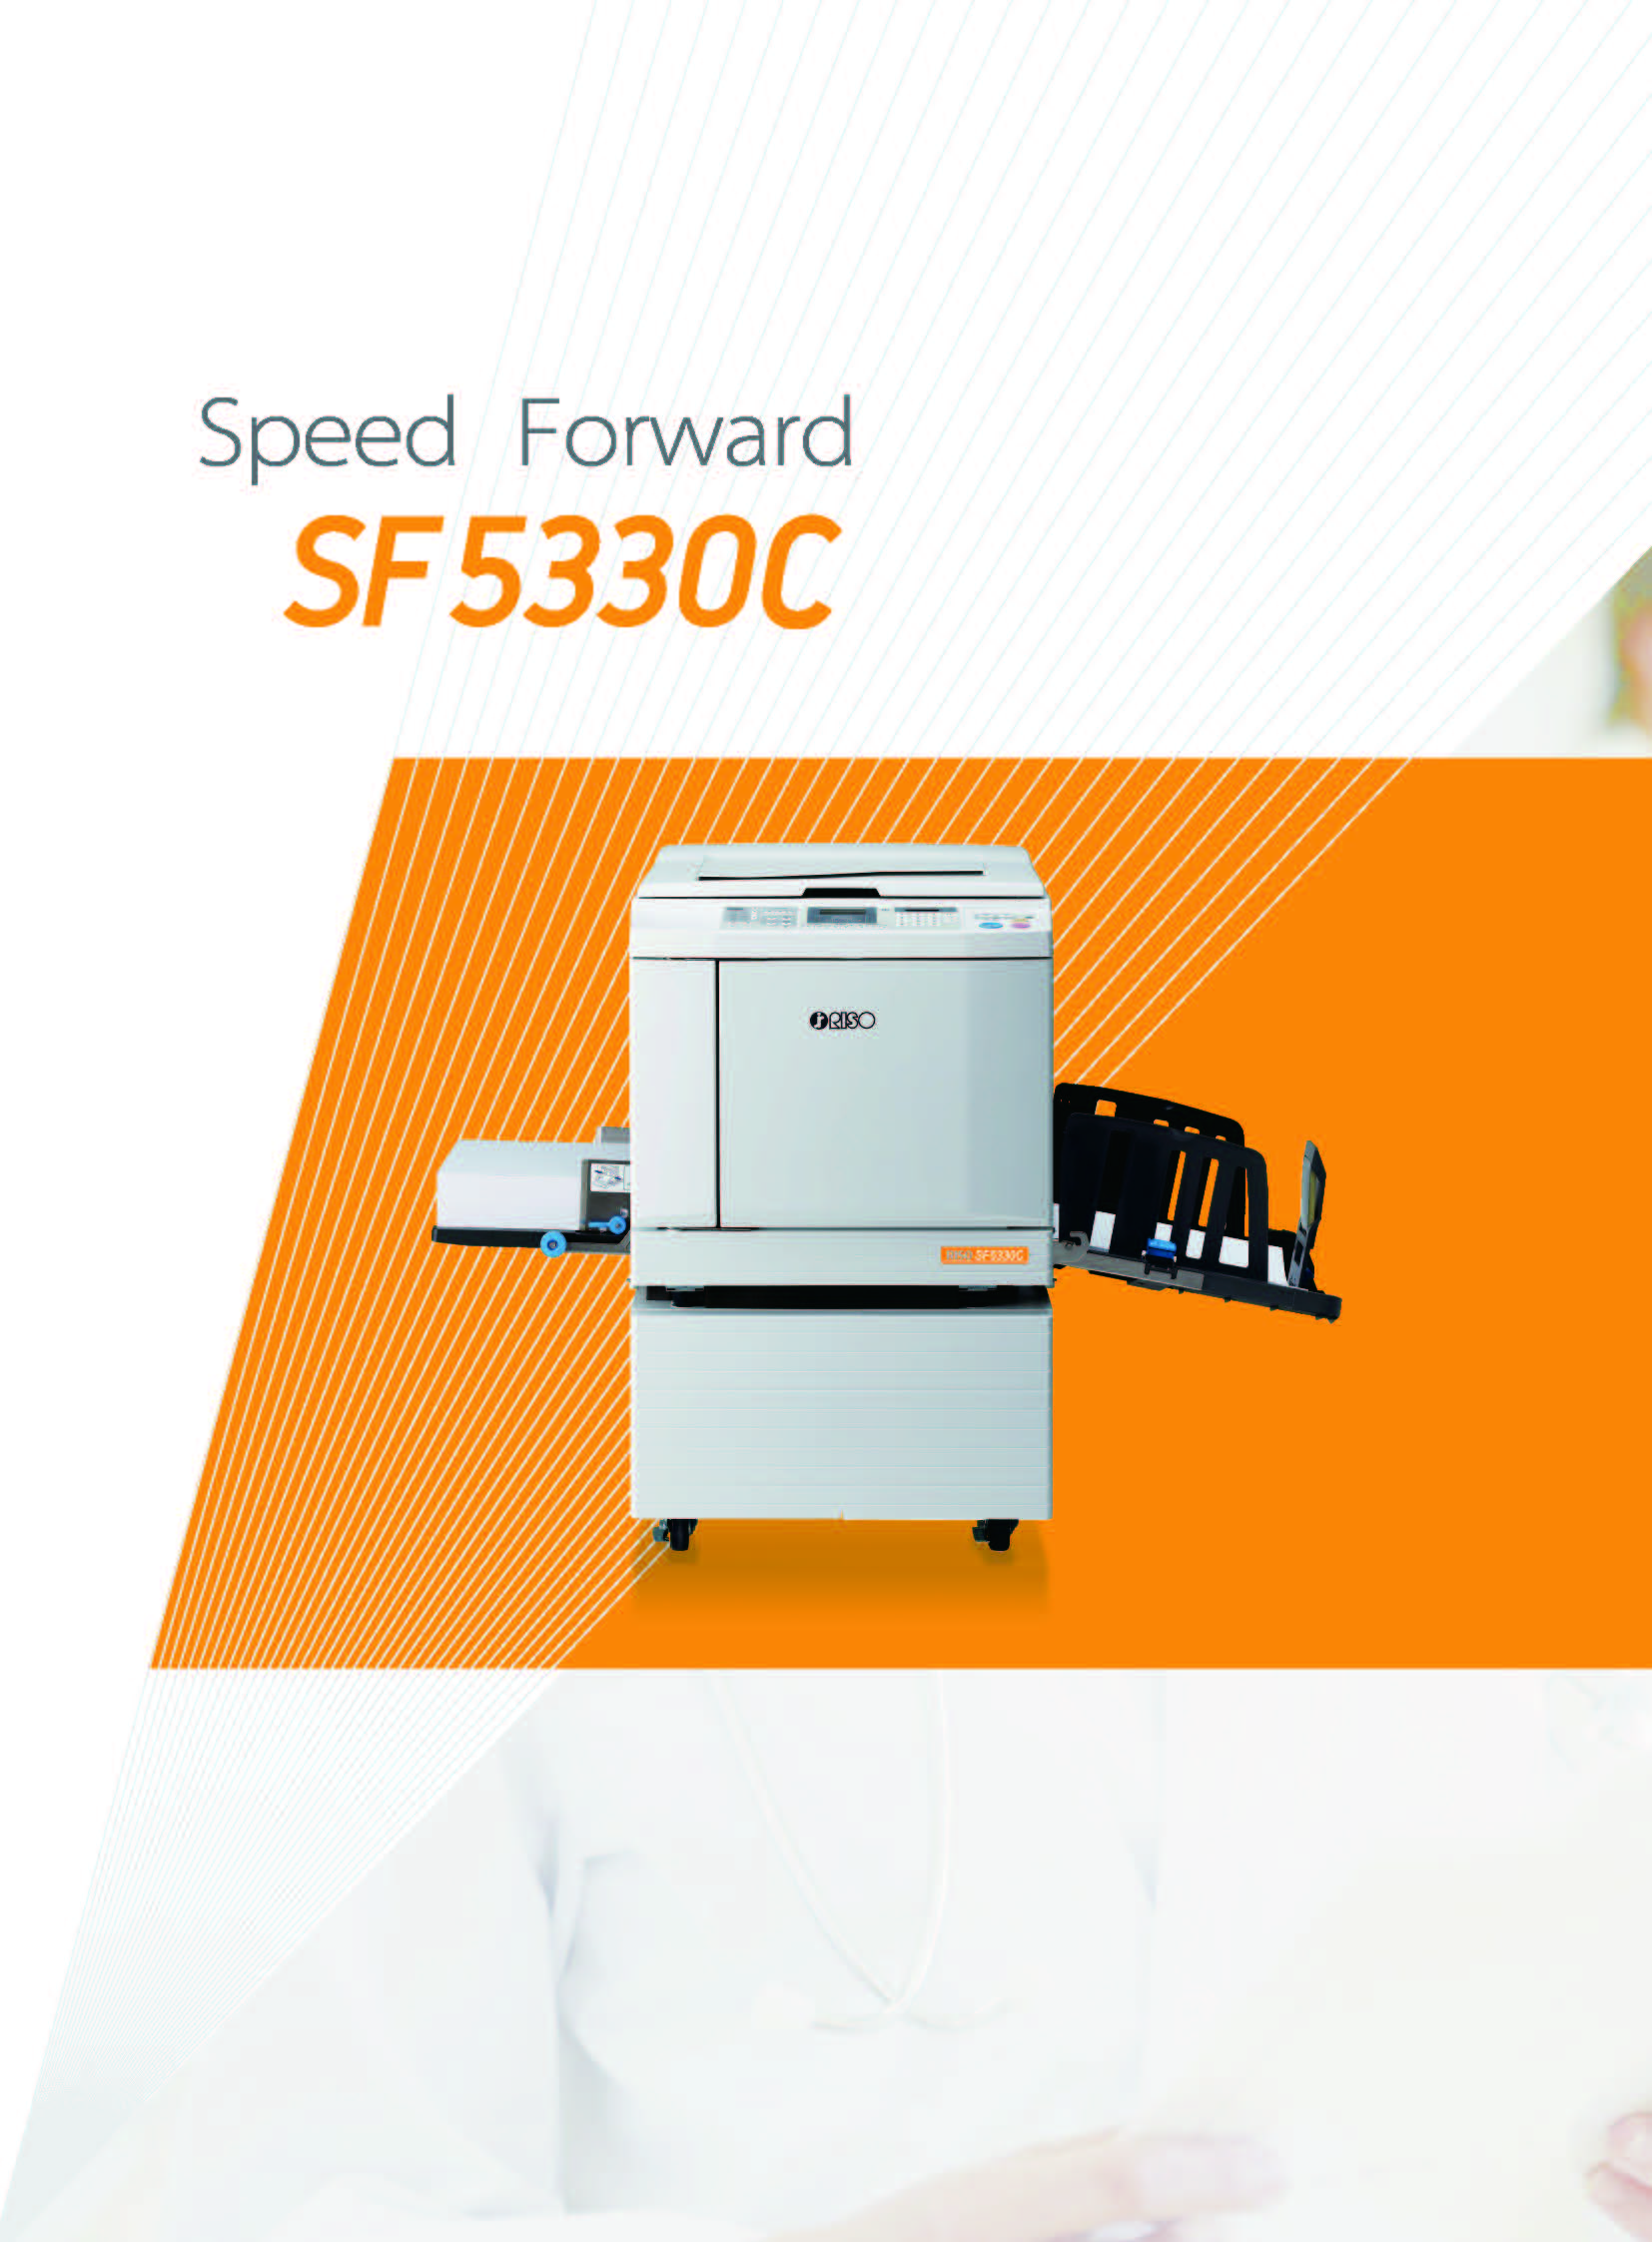 理想一体化速印机SF5330C 标配电脑打印 A3扫描A3印刷 24个月限150万张